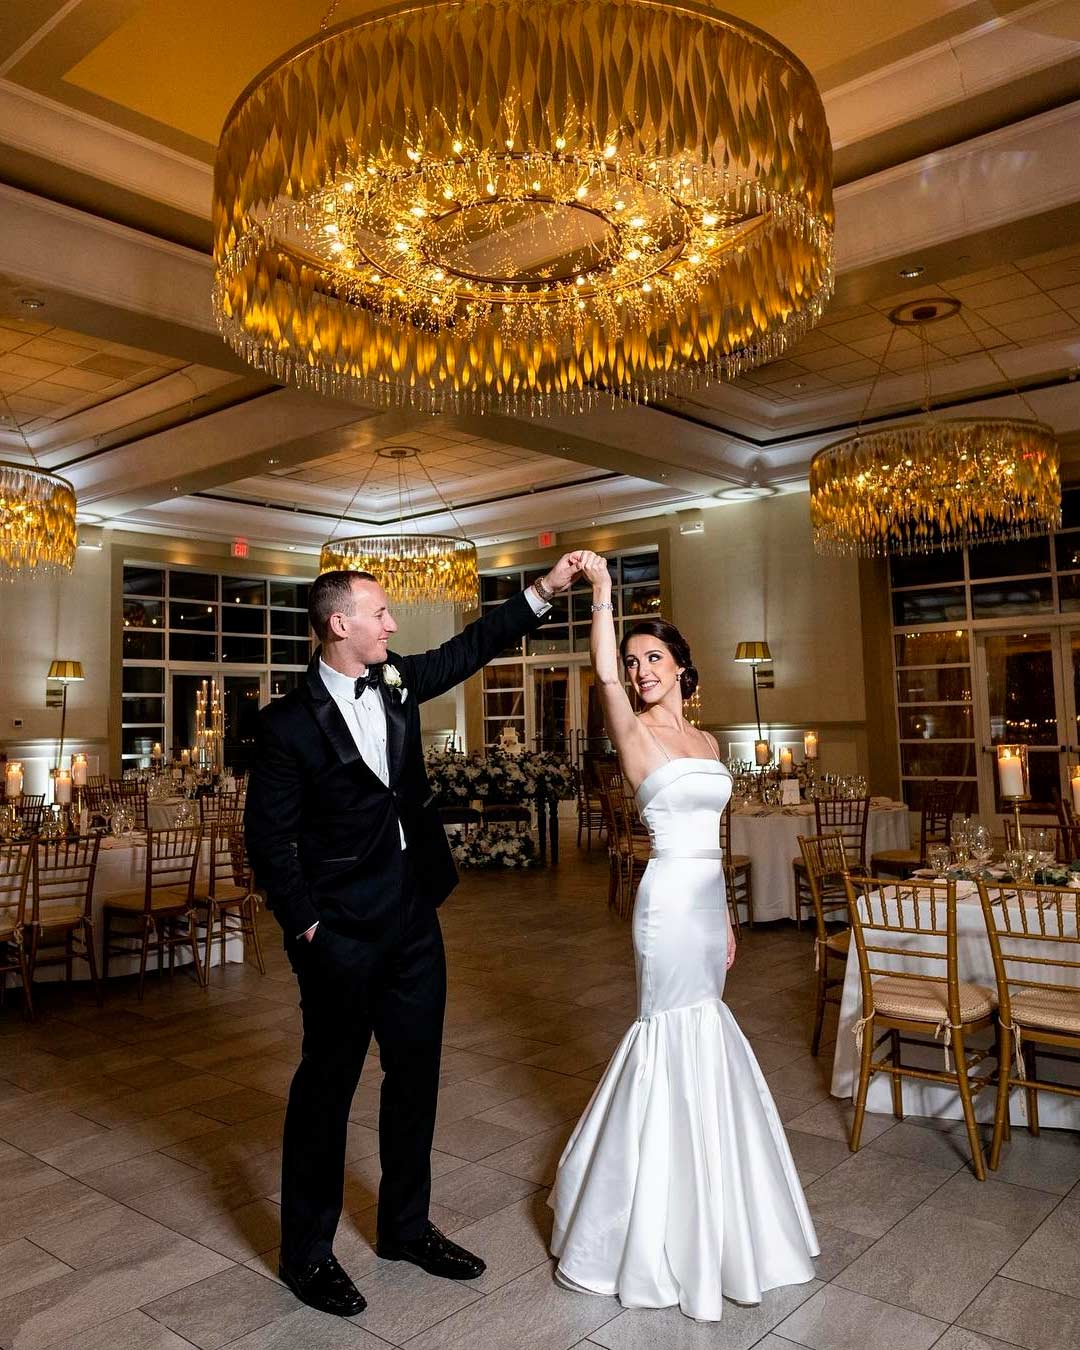 best wedding venues in new jersey aisle indoor bride groom